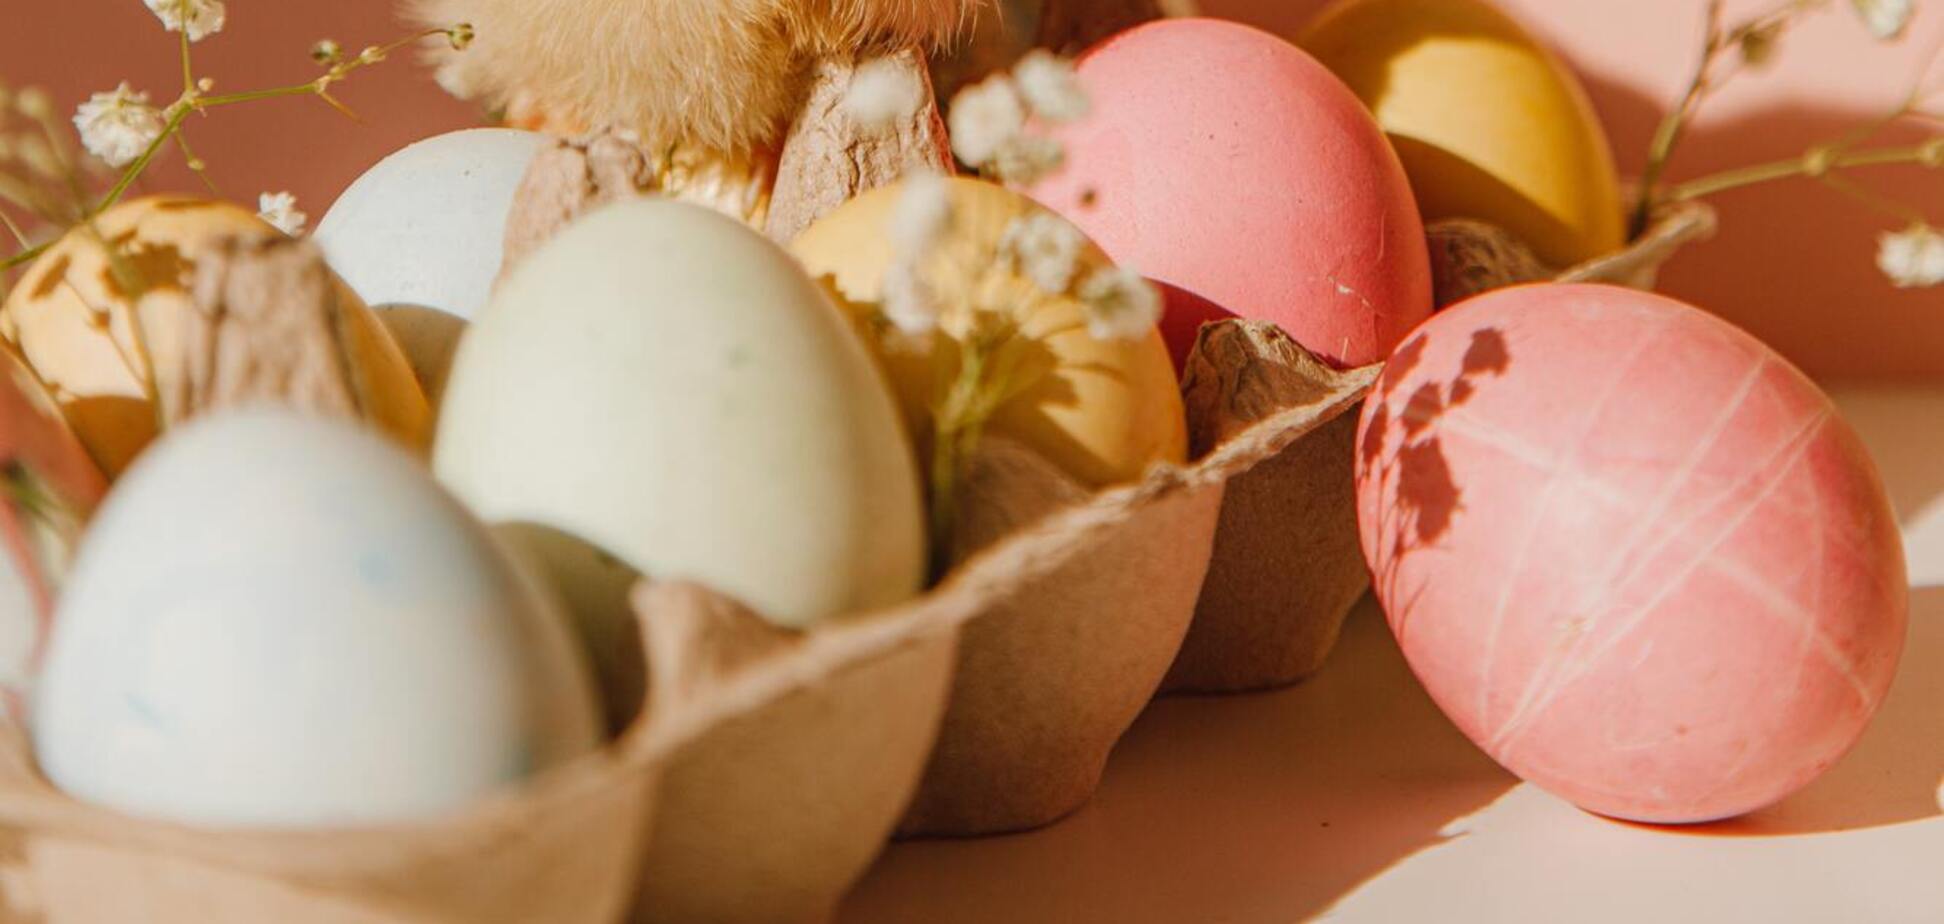 Чем категорически запрещено красить яйца на Пасху: этими красителями можно отравиться